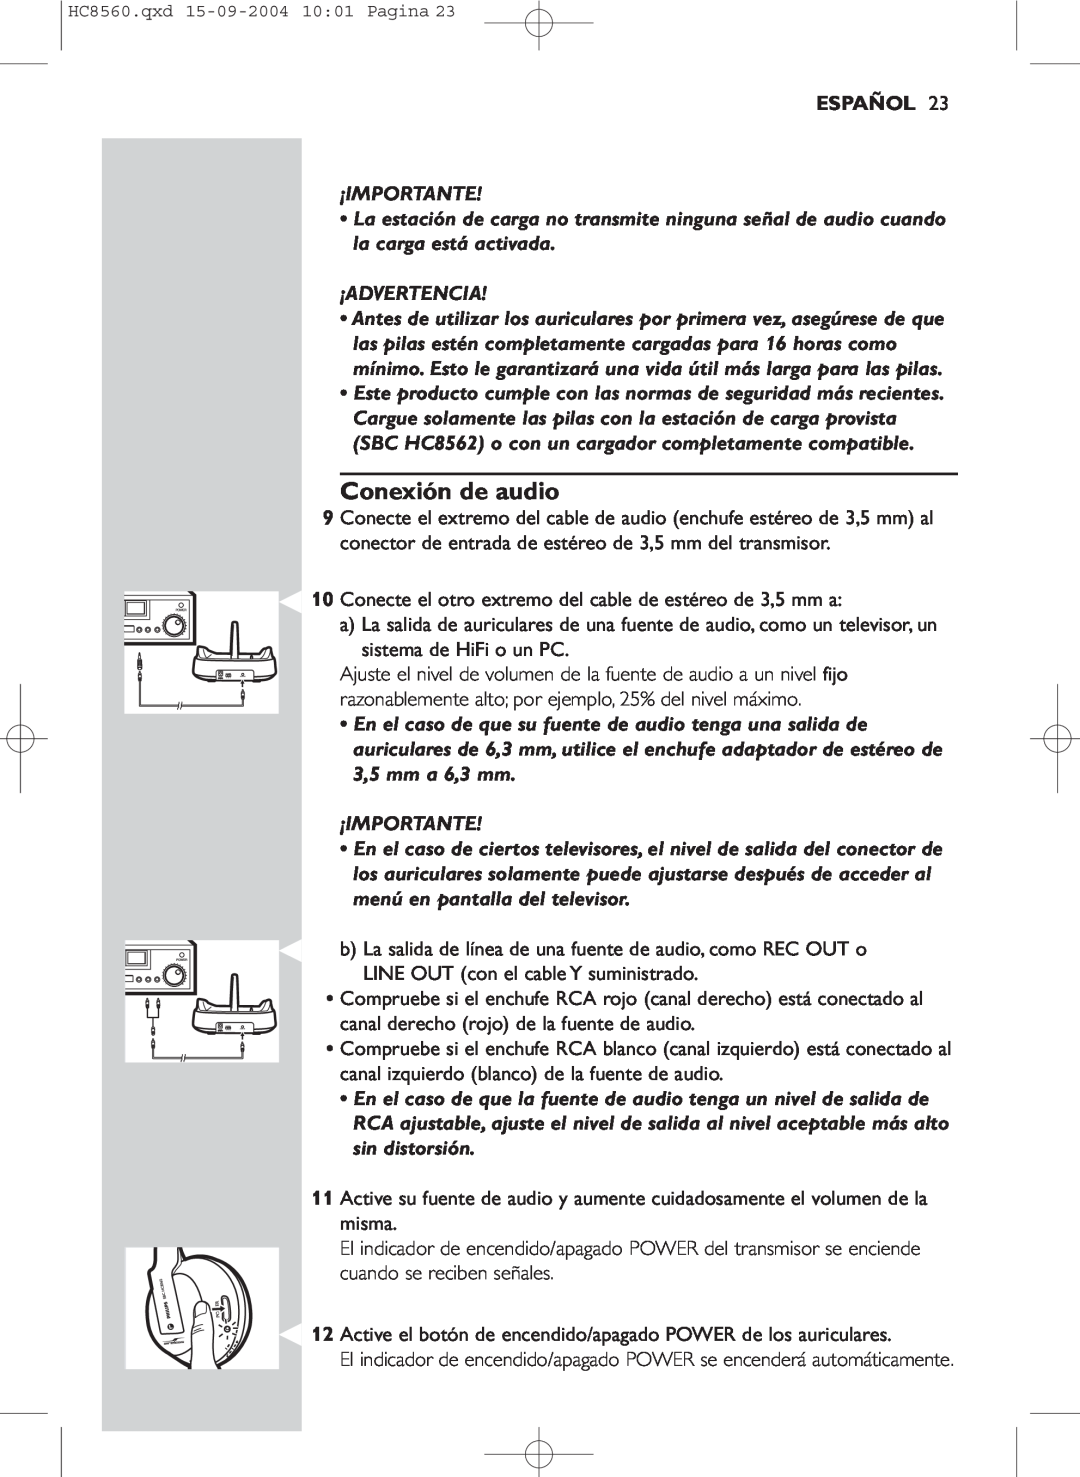 Philips HC 8560 manual Conexión de audio, Español, ¡Importante, ¡Advertencia 